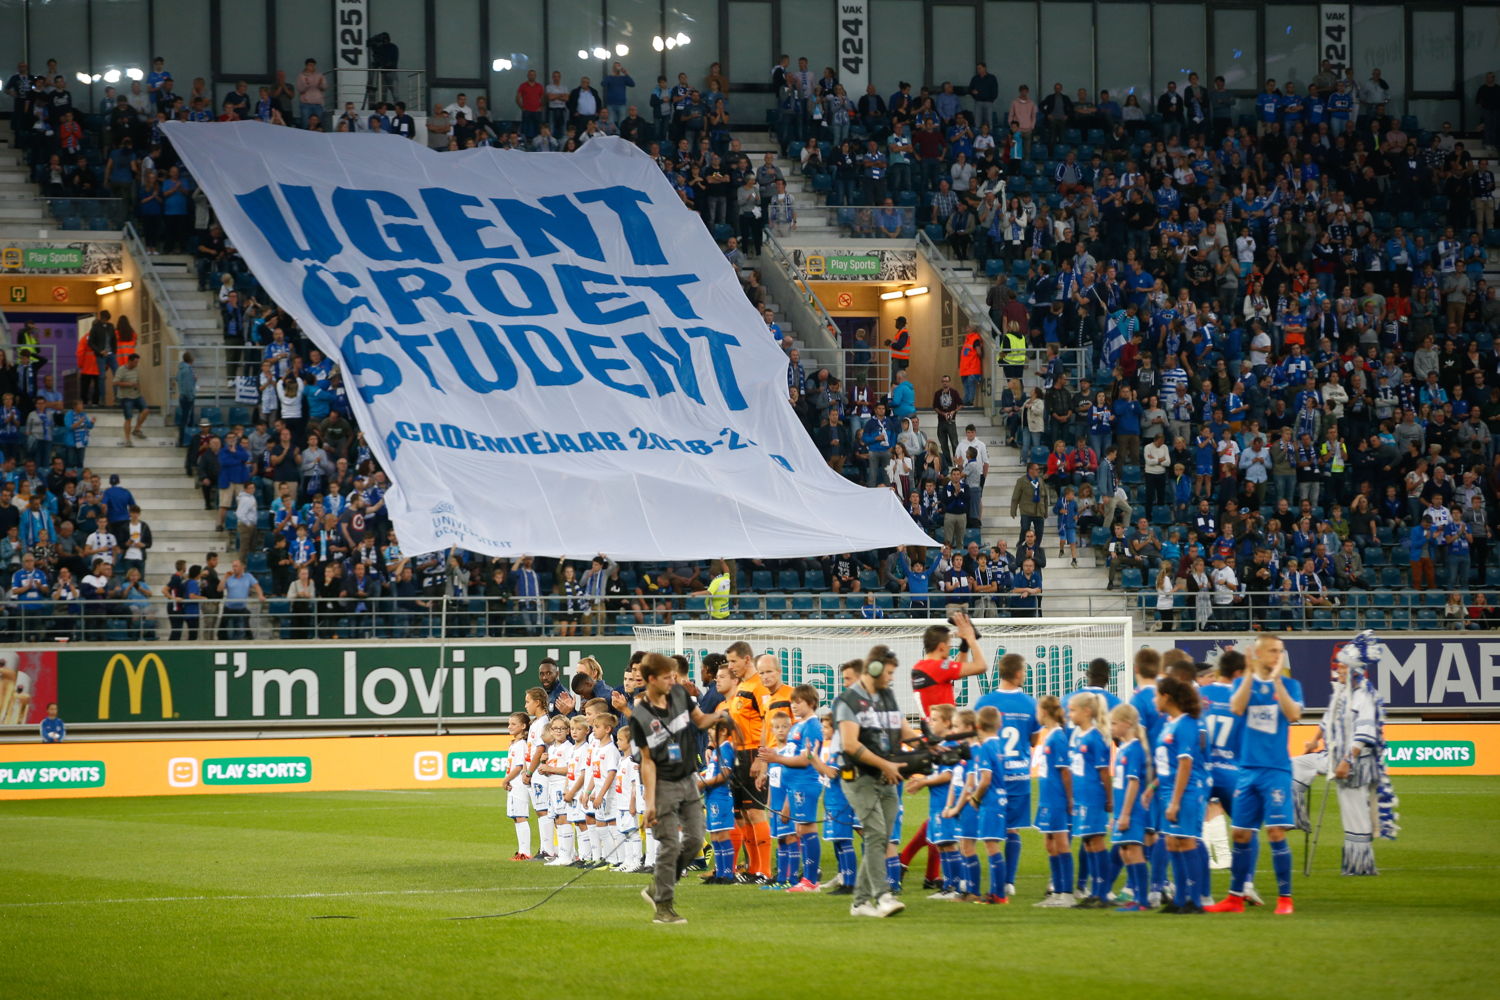 De aftrap van de campagne: de supporters van AA Gent rollen een tifo uit. 